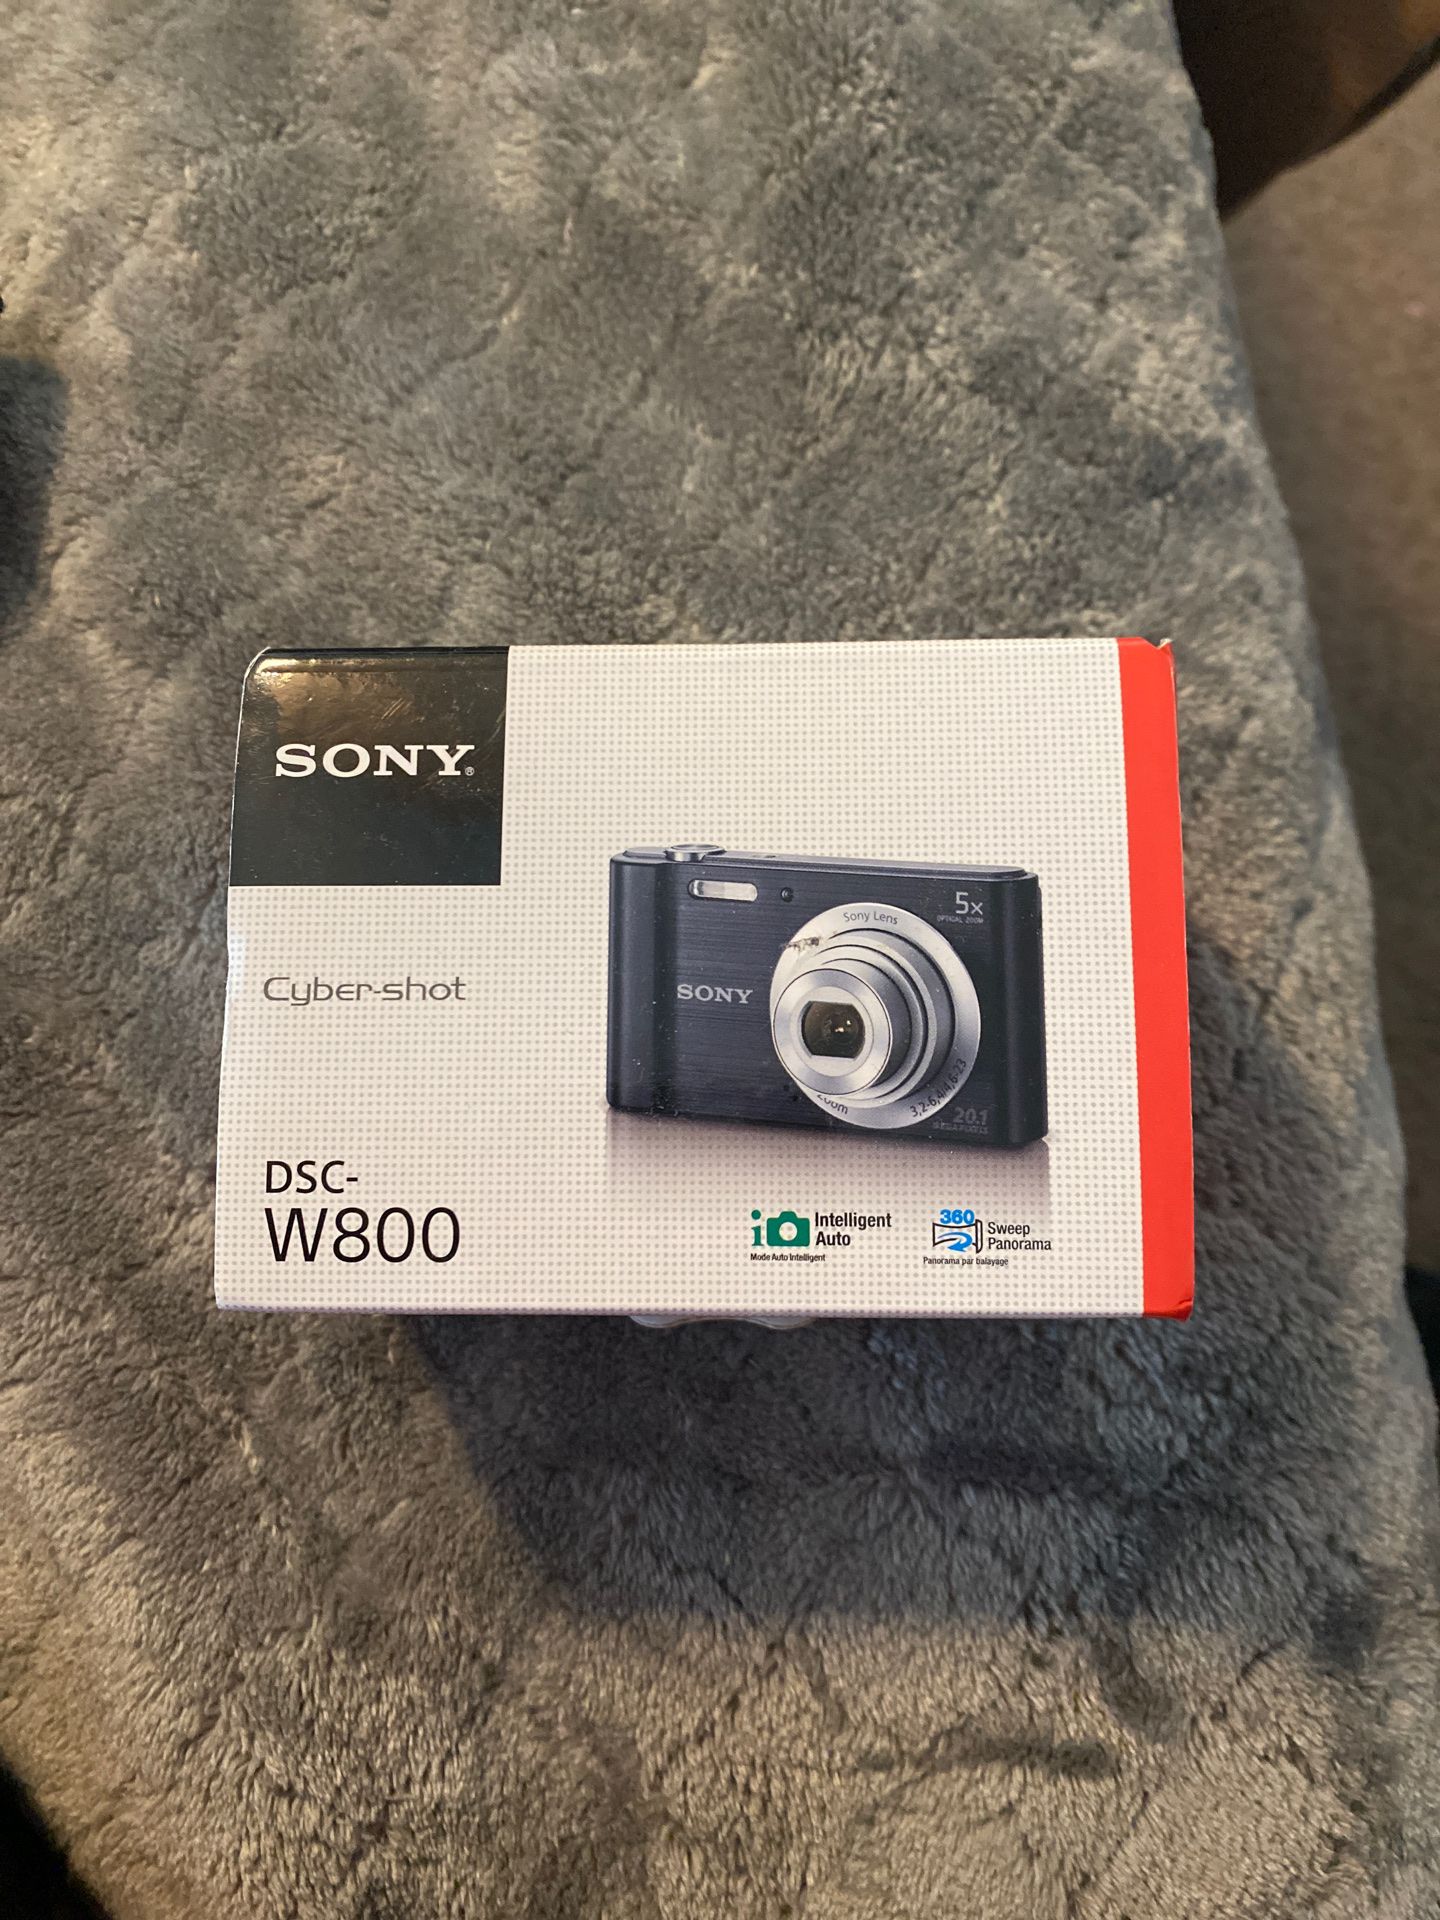 Camera- Sony cybershot DSC W800